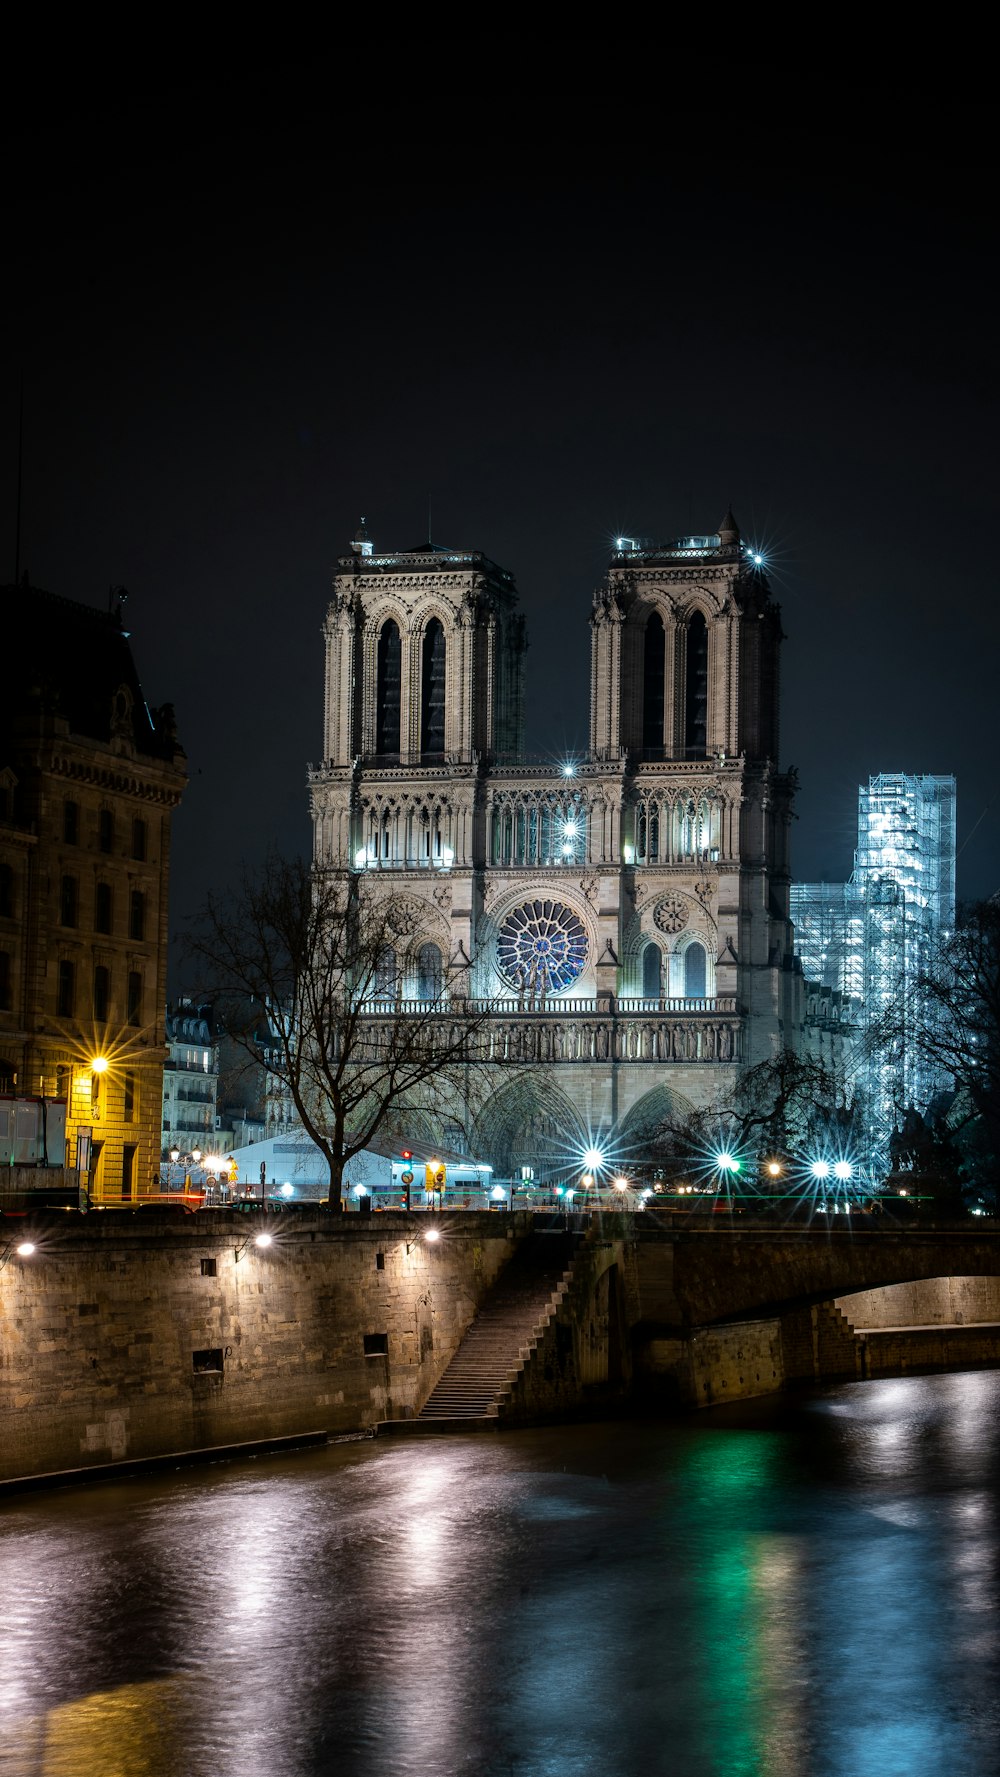 Une grande cathédrale illuminée la nuit au-dessus d’une rivière